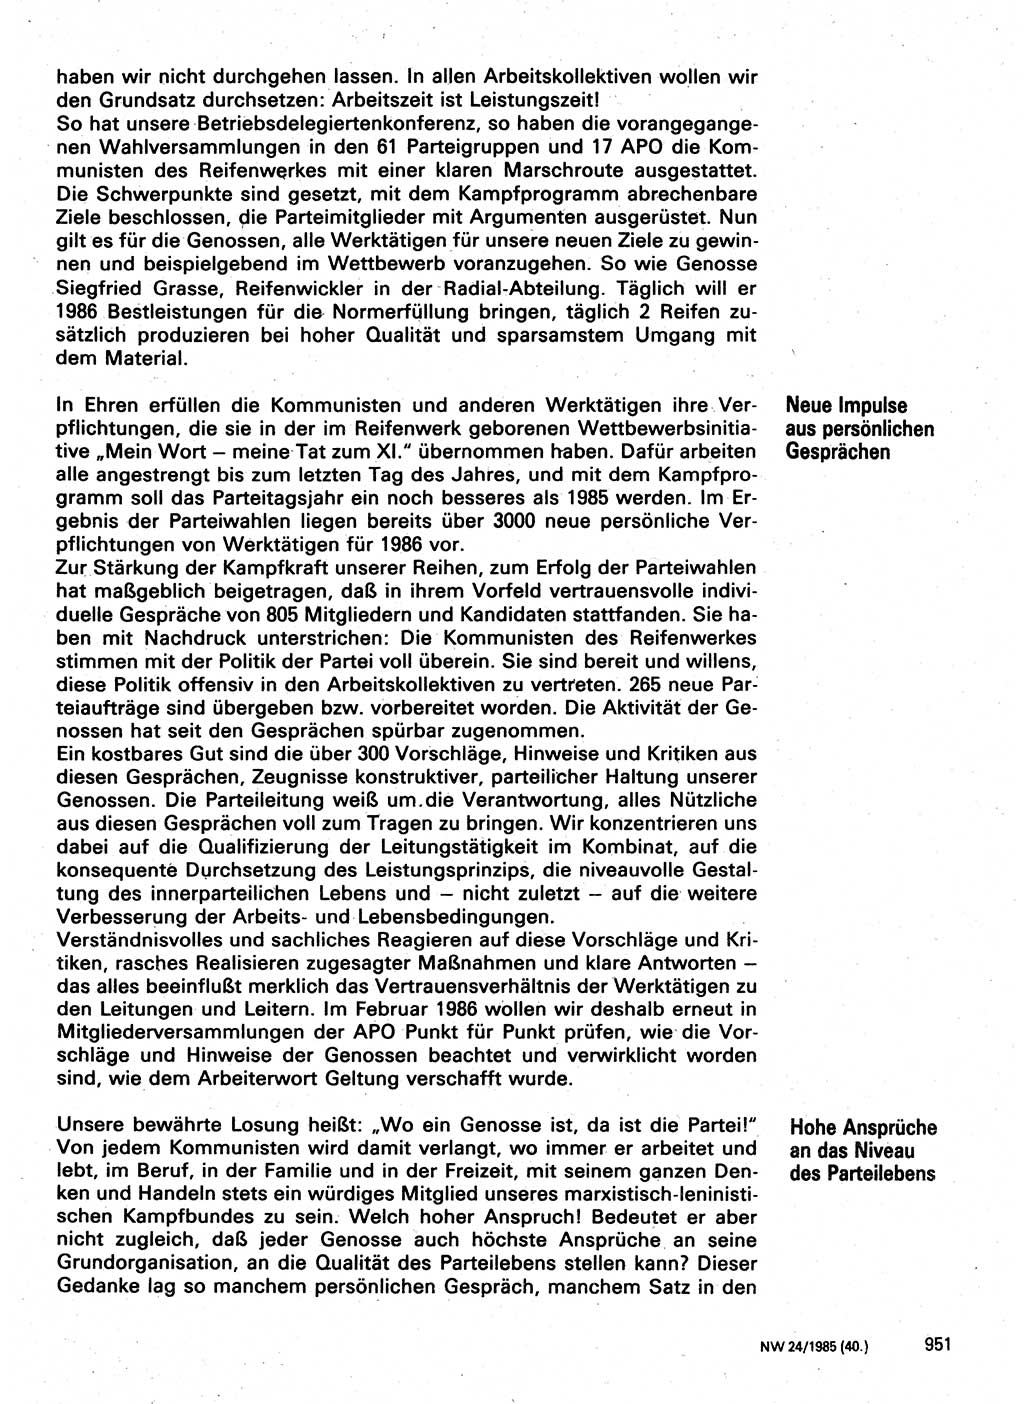 Neuer Weg (NW), Organ des Zentralkomitees (ZK) der SED (Sozialistische Einheitspartei Deutschlands) für Fragen des Parteilebens, 40. Jahrgang [Deutsche Demokratische Republik (DDR)] 1985, Seite 951 (NW ZK SED DDR 1985, S. 951)